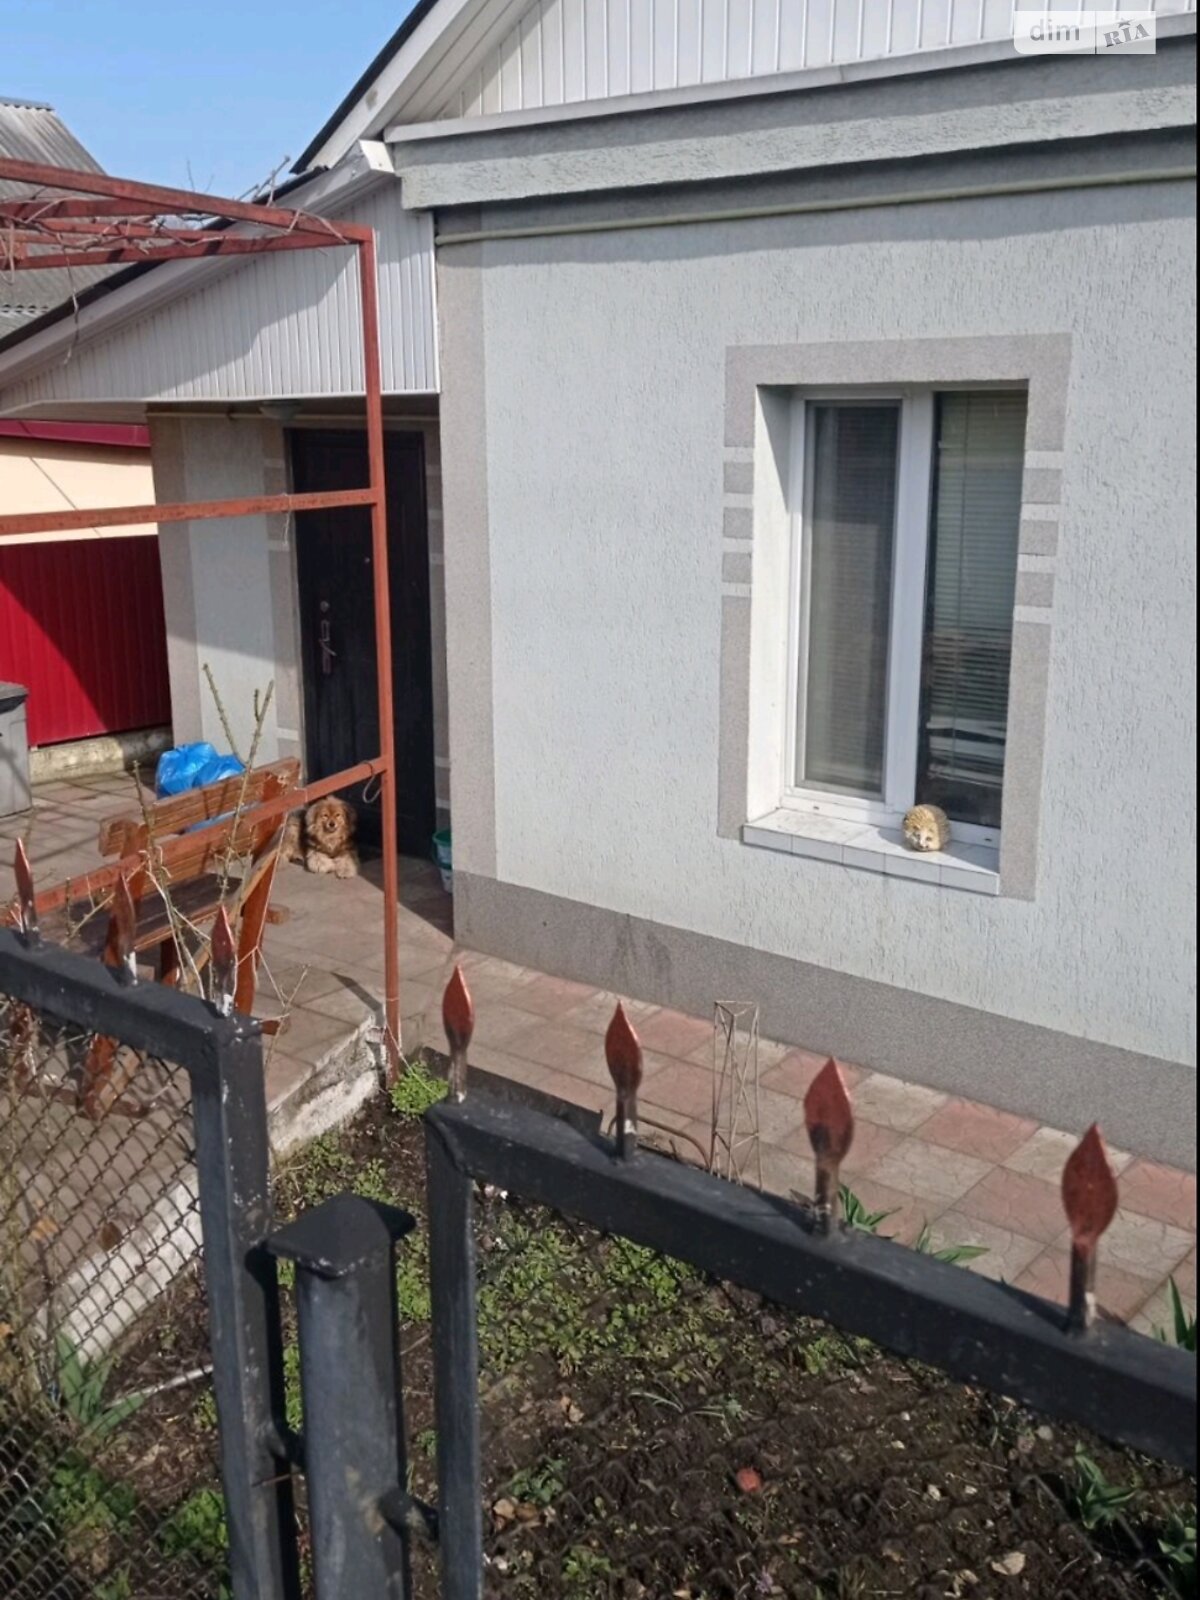 Продажа части дома в Хмельницком, переулок Северный, район Гречаны дальние, 2 комнаты фото 1